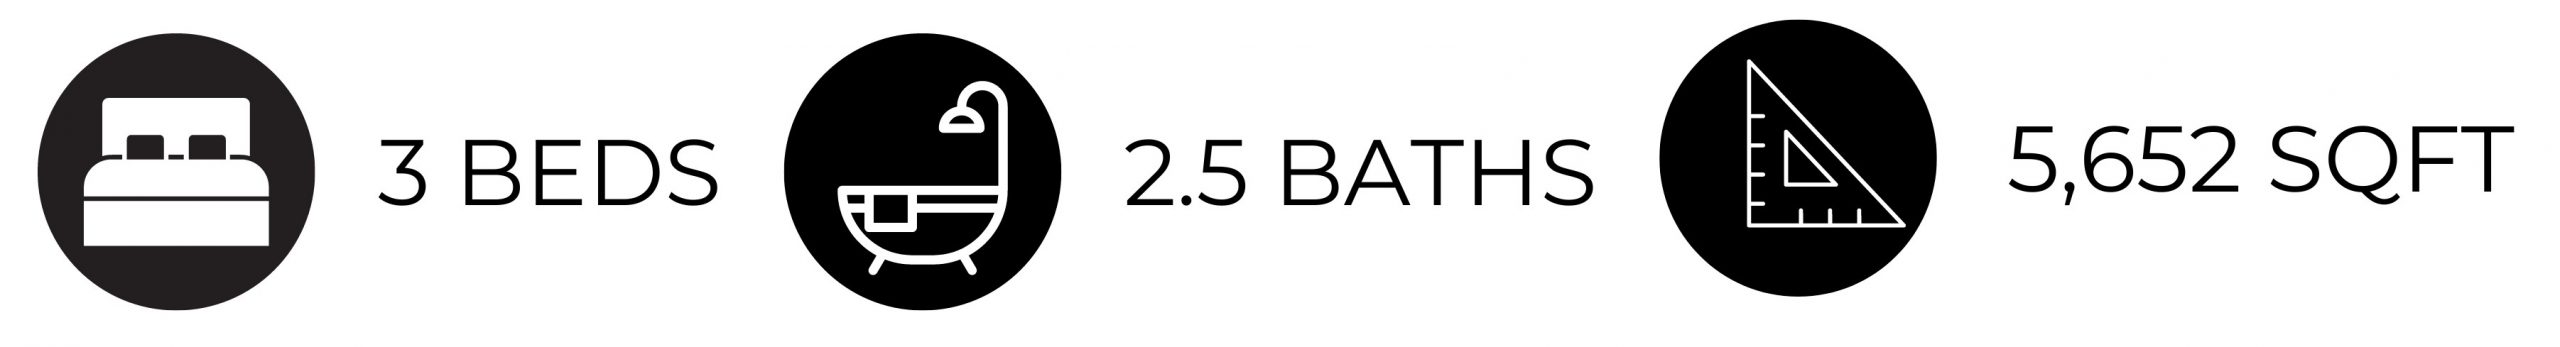 2.5 BATHS - 1